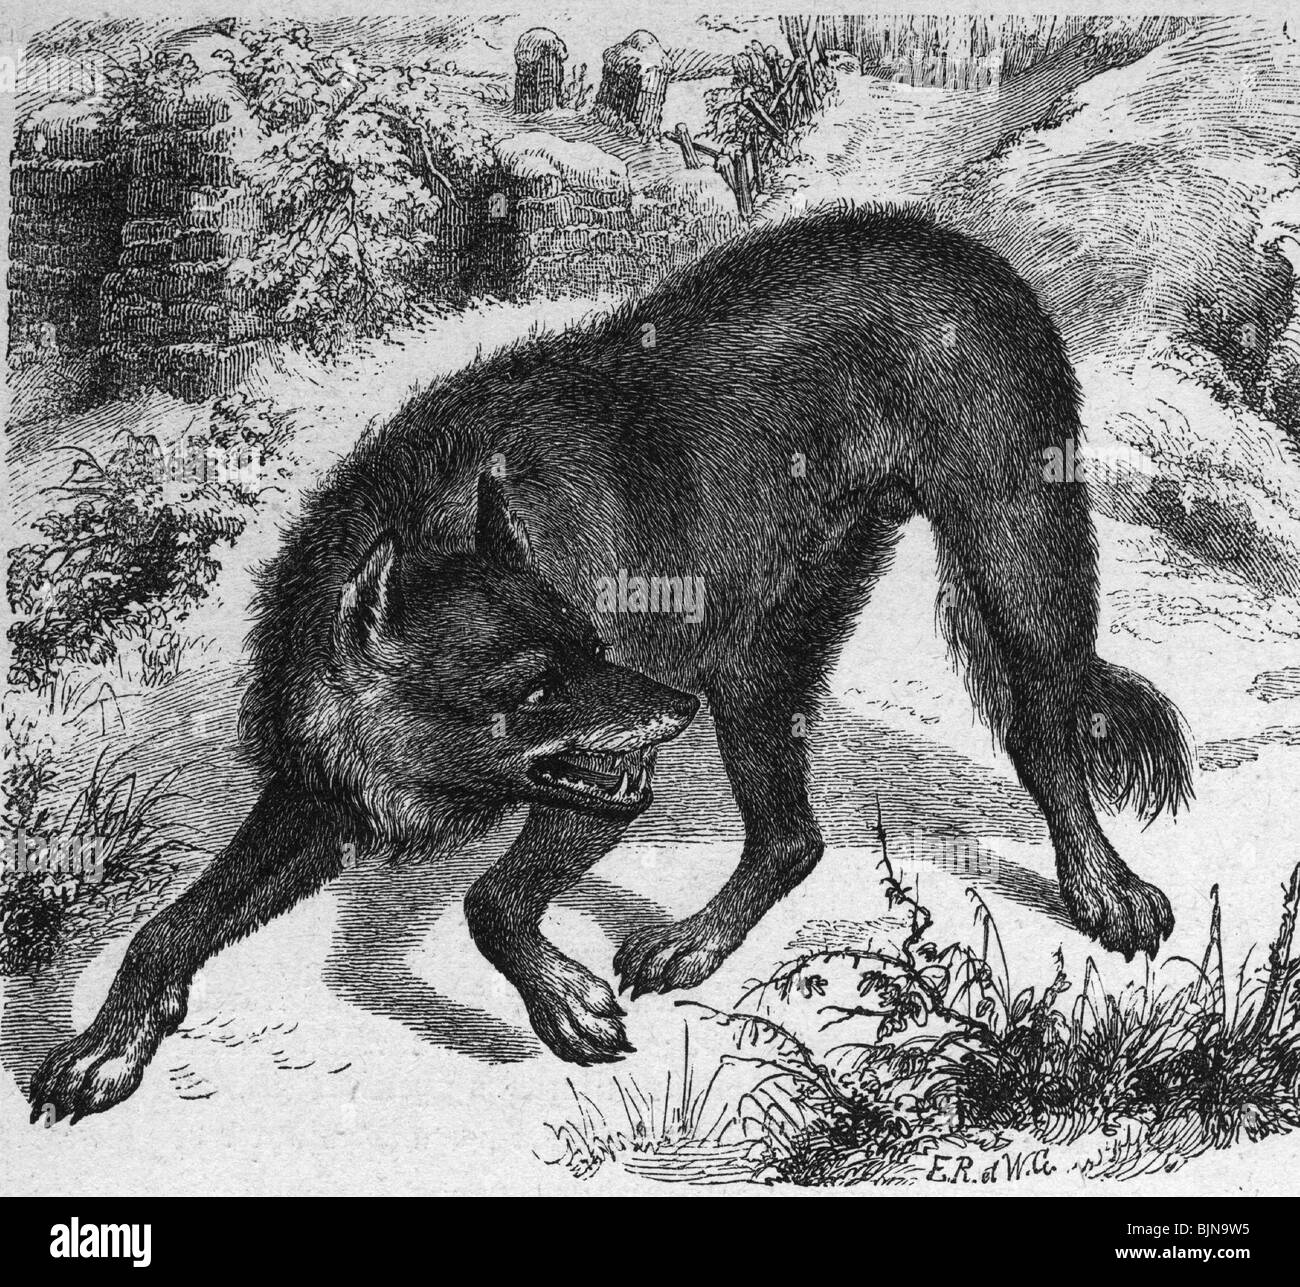 Zoologia, lupo (Canis lupus), incisione su legno, del xix secolo, la storica, storica, animali animali, Foto Stock